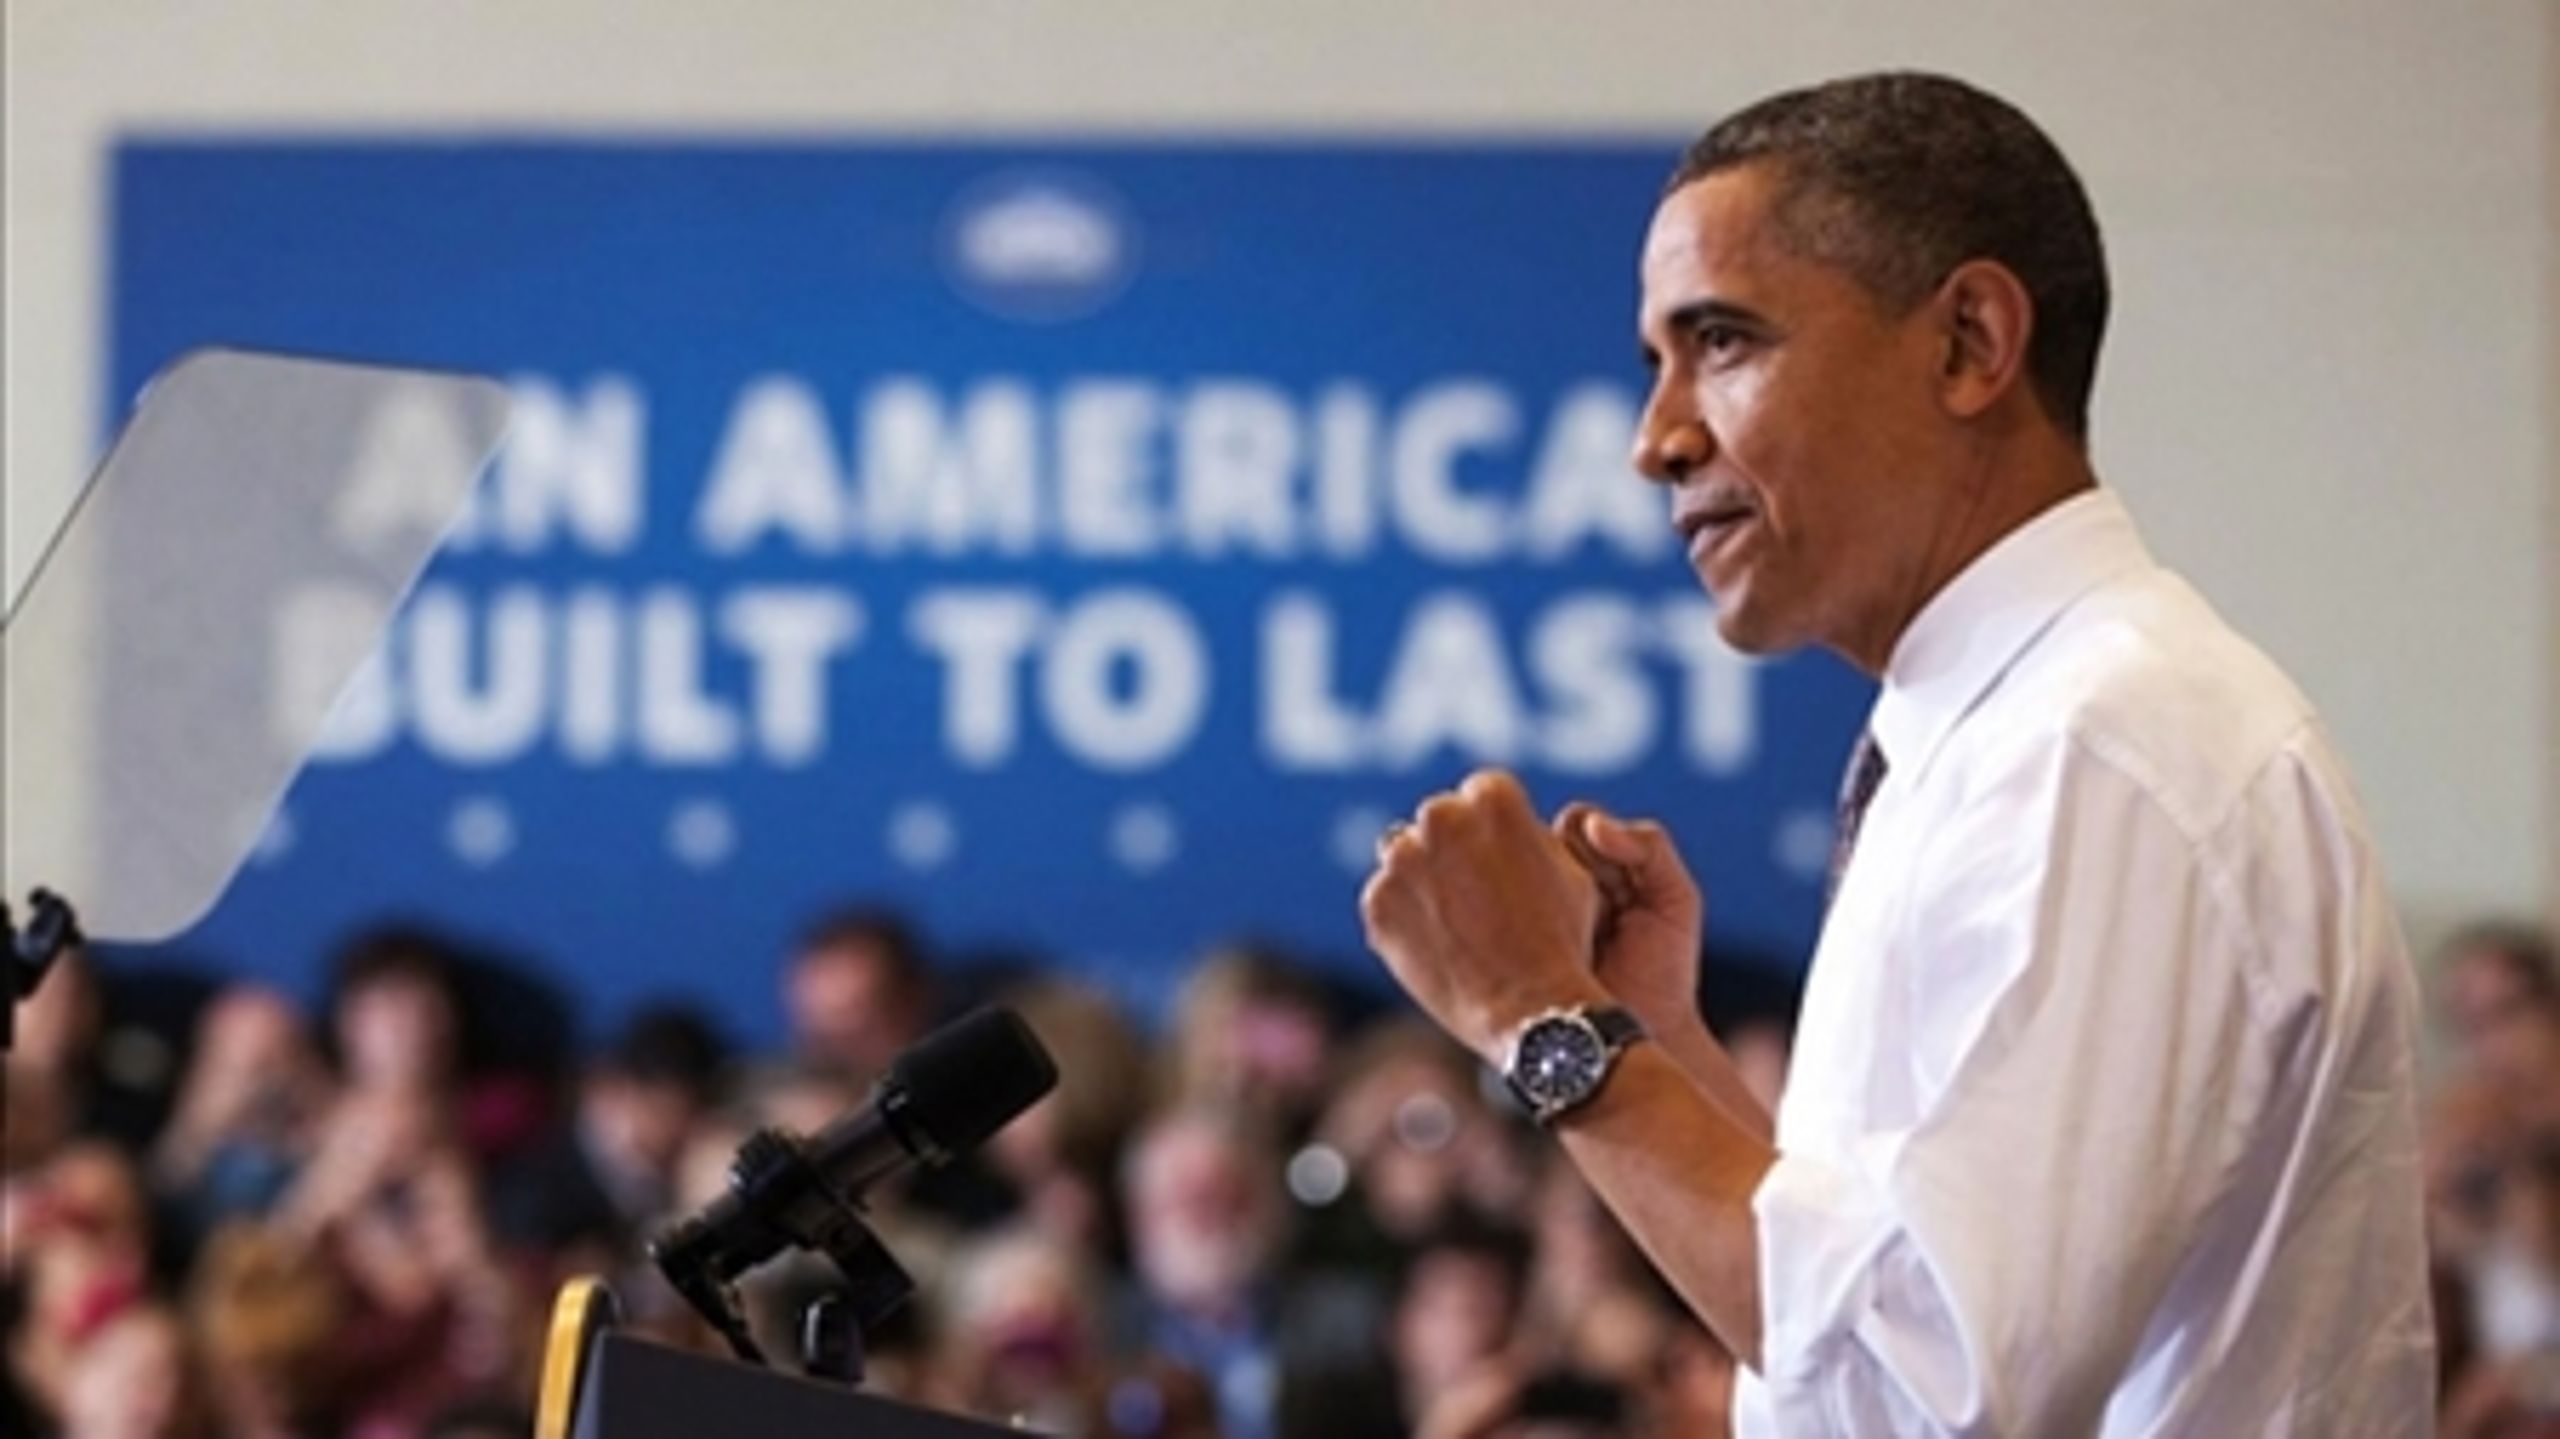 Præsident Obama taler ved et vælgermøde i Ohio, der er en af de vigtigste svingstater i valgkampen.